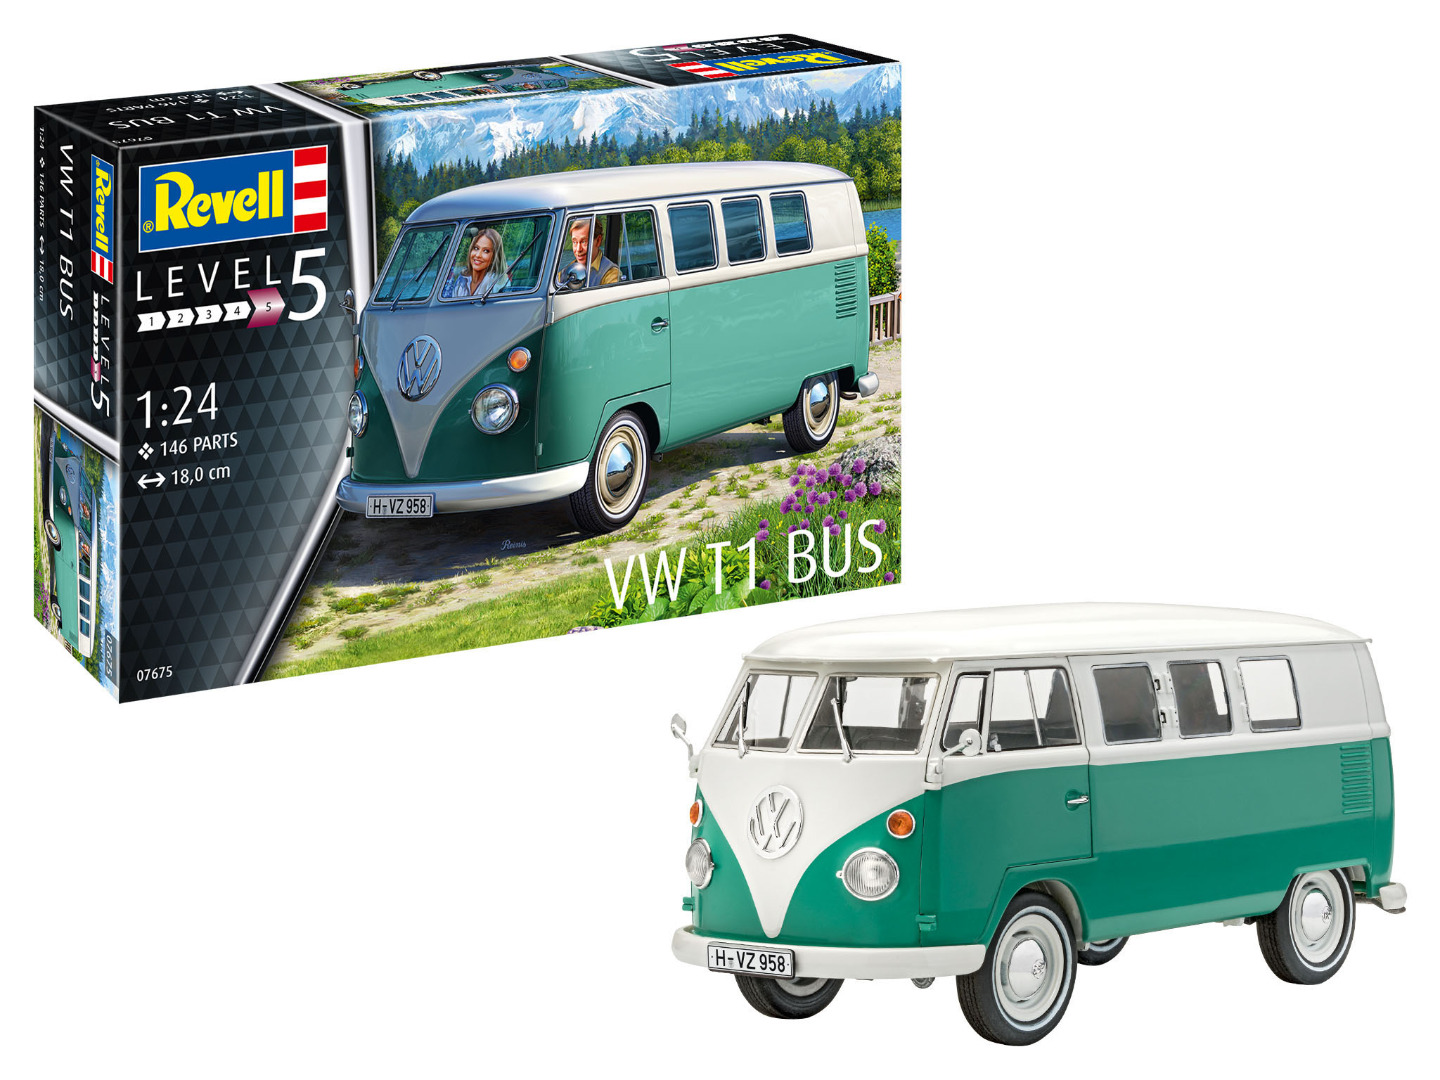 Revell Model Kit VW T1 Bus Scale 1:24